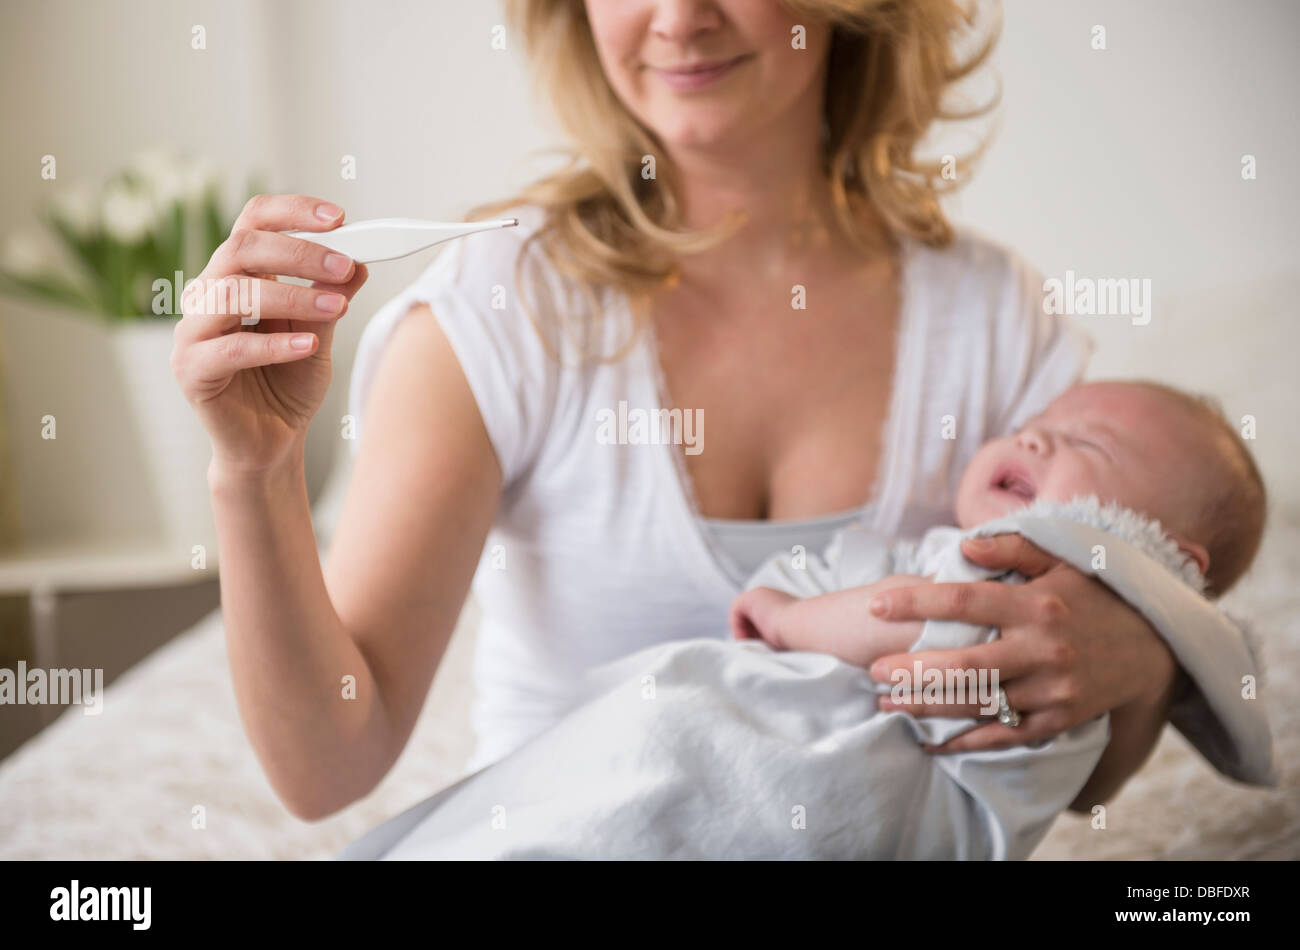 Mère de race blanche prendre la température du bébé qui pleure Banque D'Images